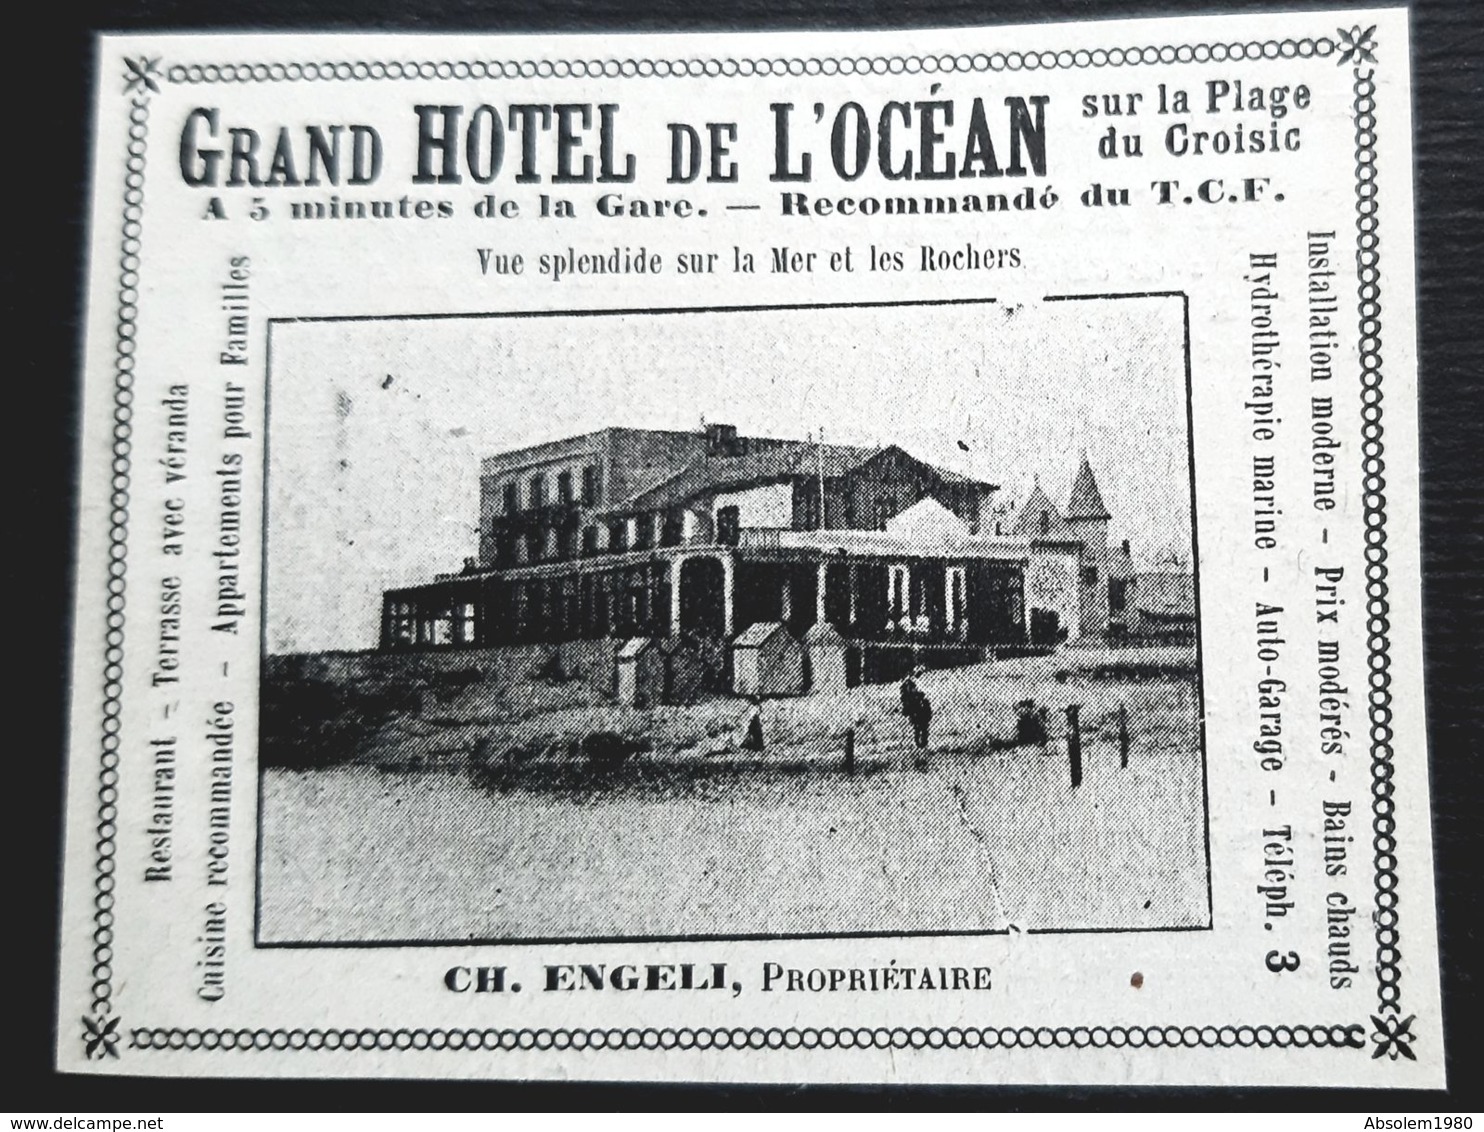 CROISIC PLAGE GRAND HOTEL DE L'OCEAN  ENGELI PROPRIETAIRE 1914 PUBLICITE ANCIENNE HOTELLERIE LOIRE ATLANTIQUE 44 - Publicités